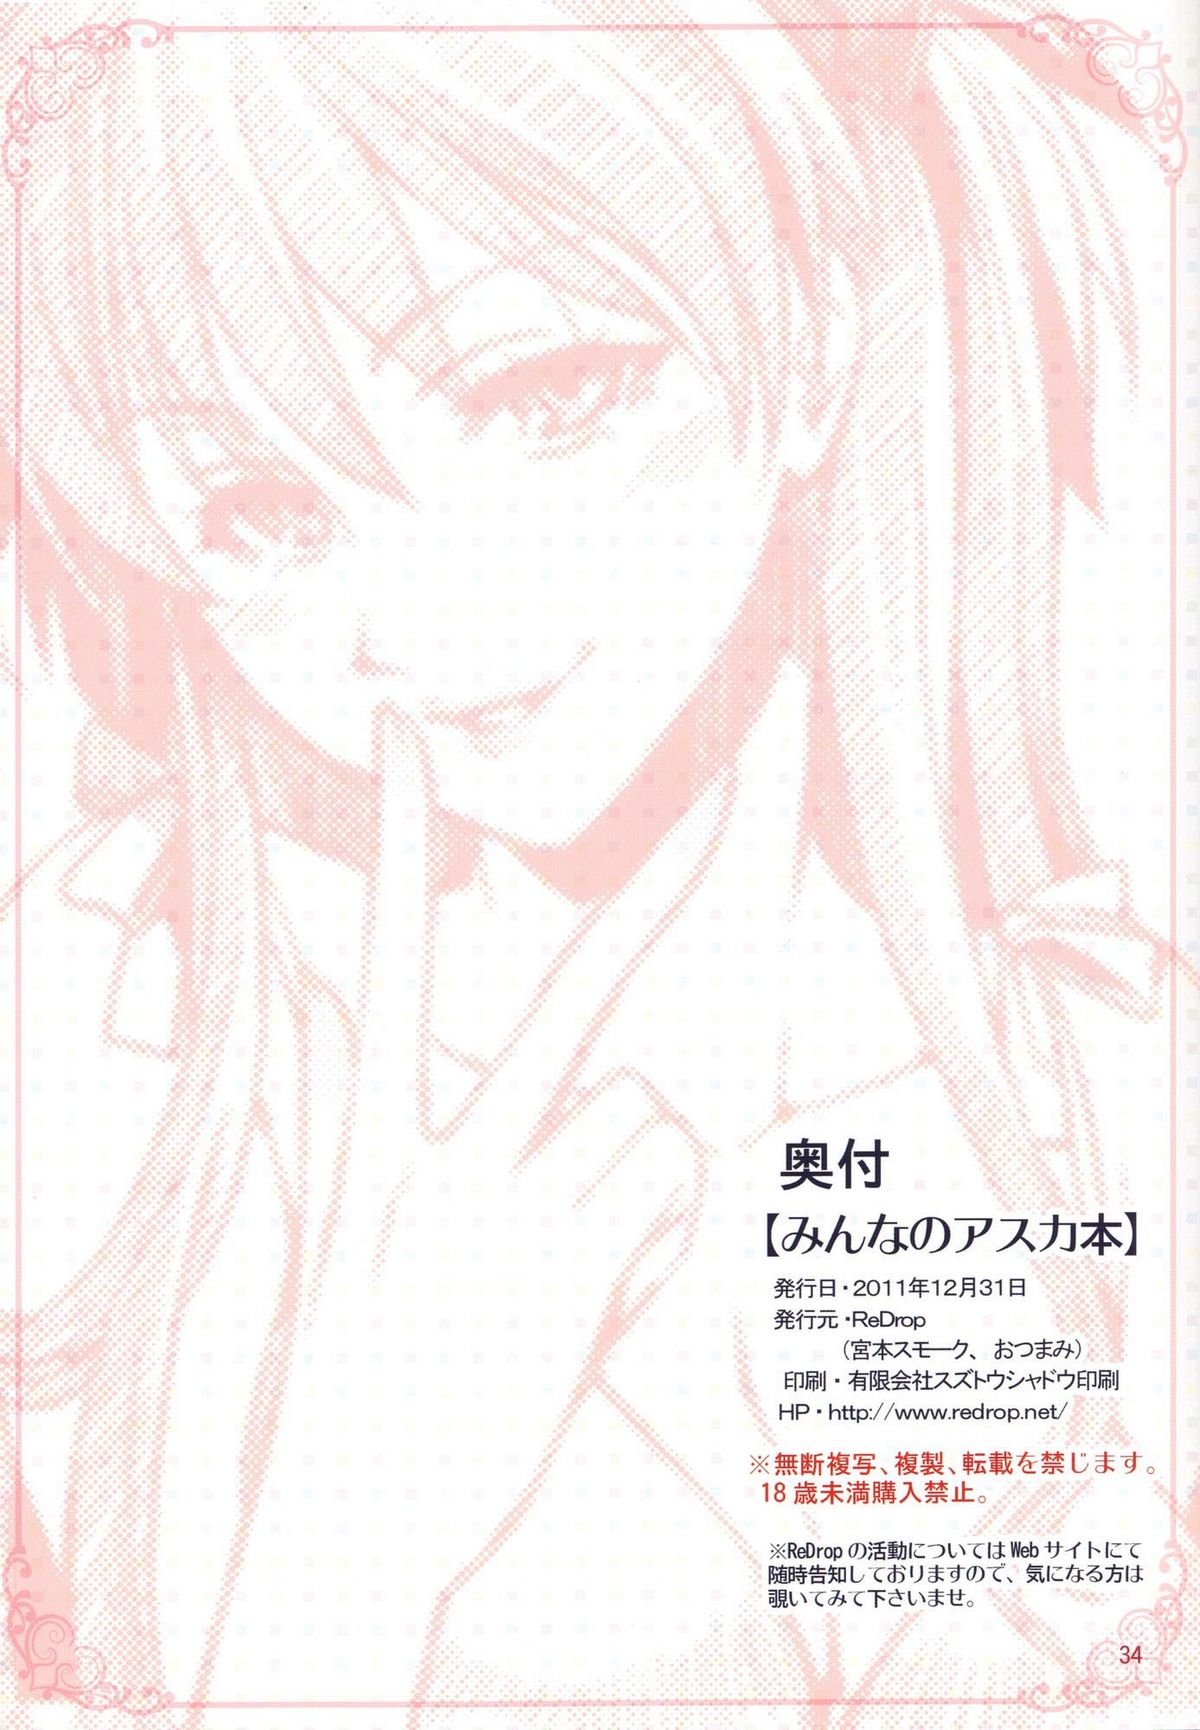 [Manga] La Asuka de Todos (Neon Genesis Evangelion)